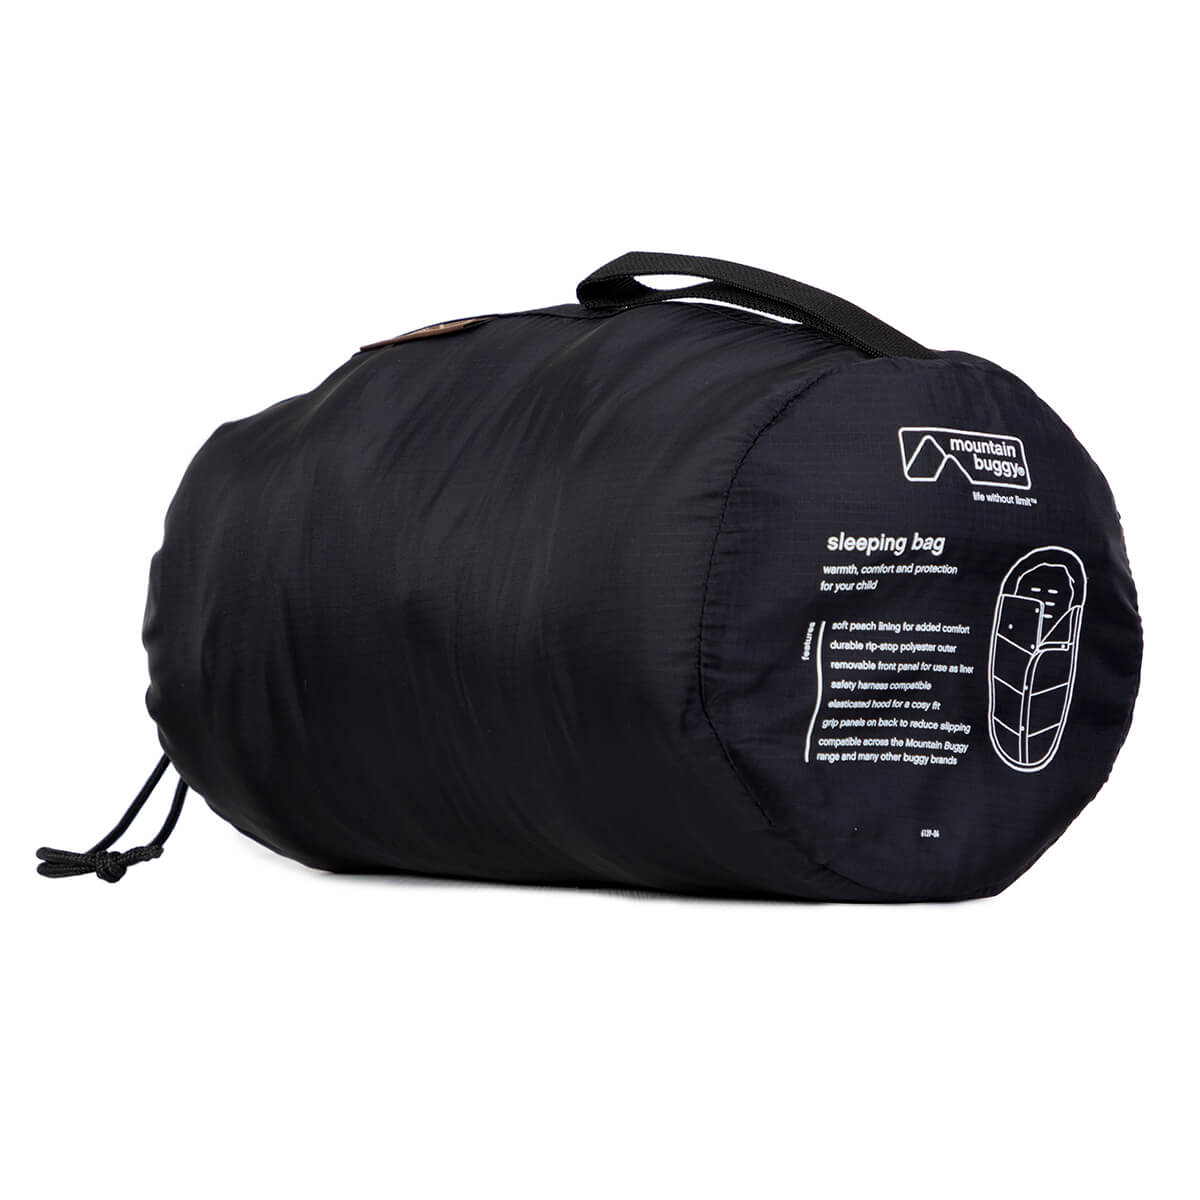 mountain buggy sleeping bag grid